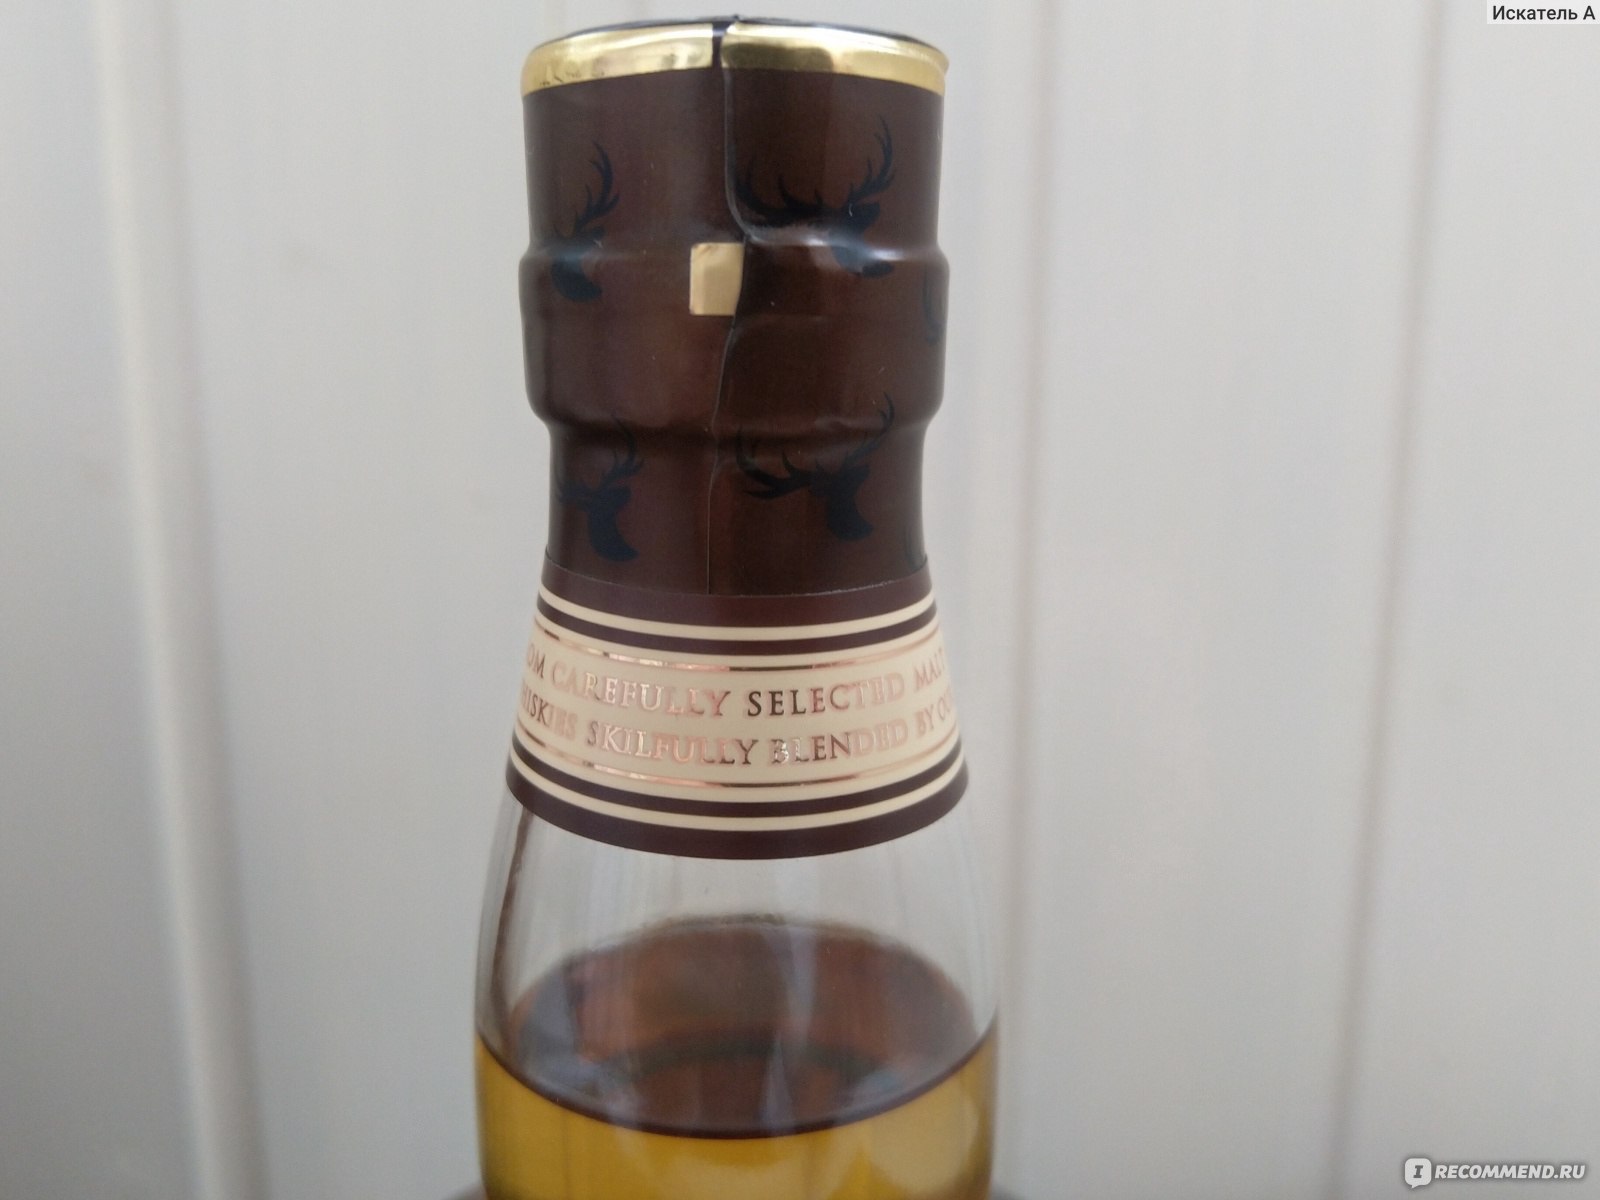 Шотландский виски ООО "Тульский винокуренный завод" Noble stag фото